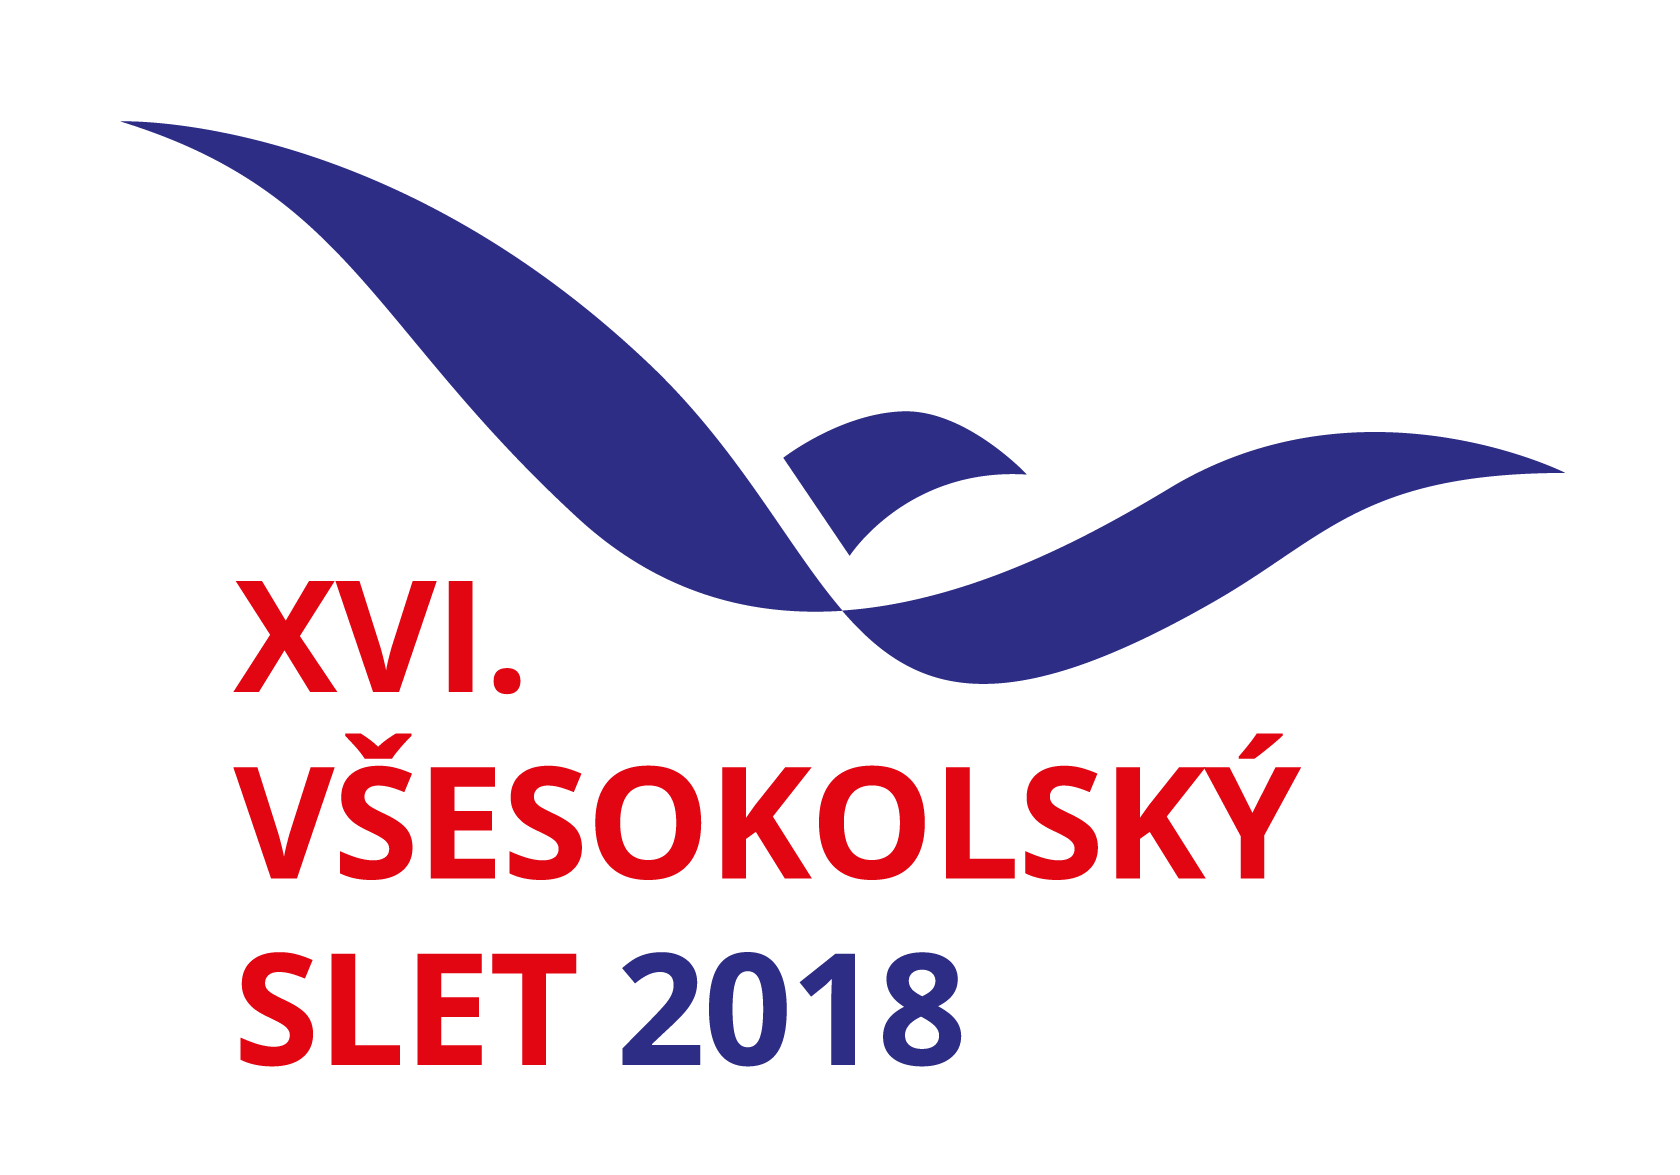 XVI_vsesokolsky_slet_2018_zakladni_varianta_vertikalni